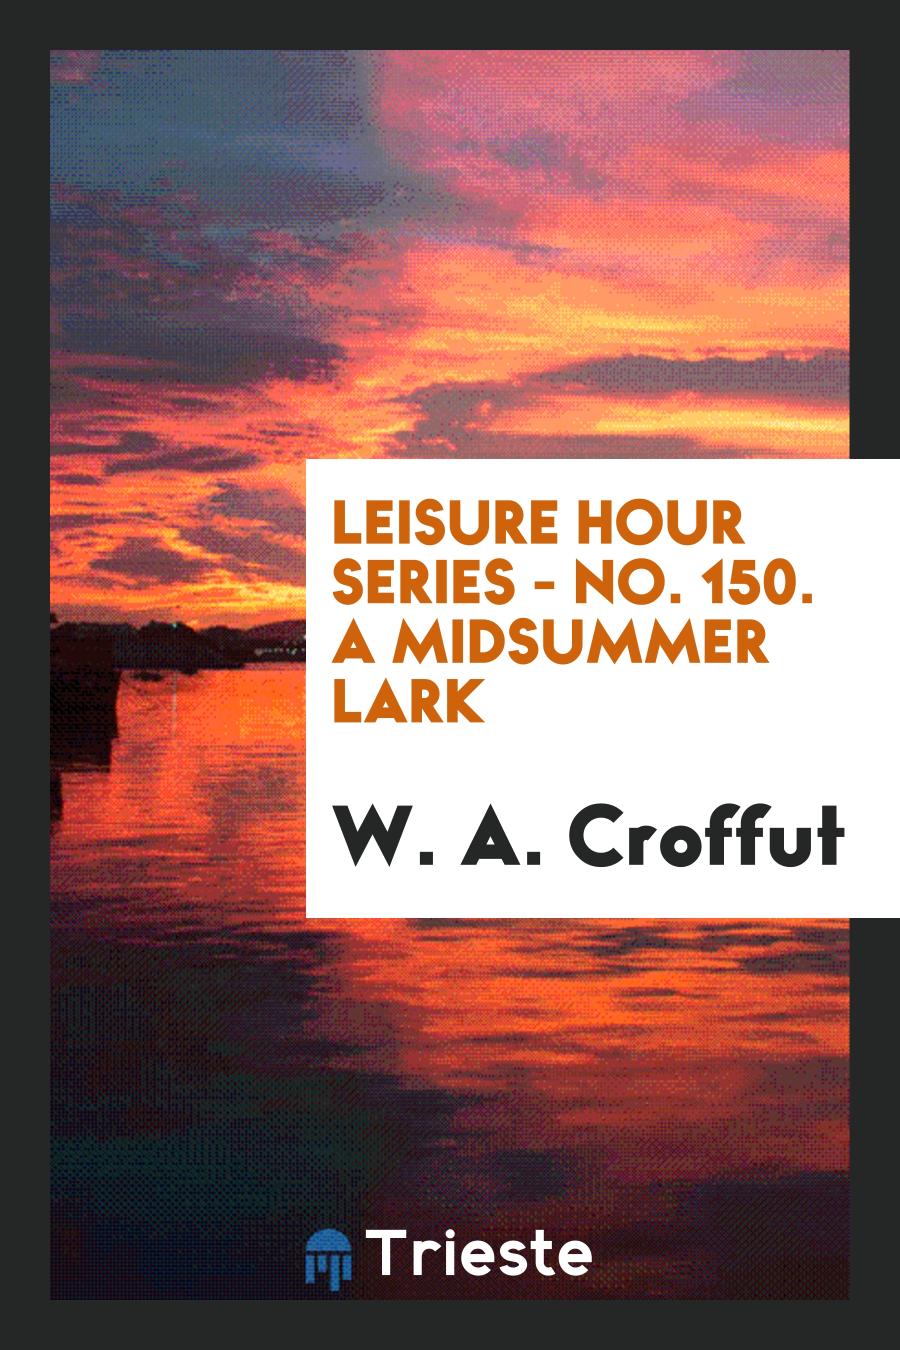 Leisure Hour Series - No. 150. A Midsummer Lark